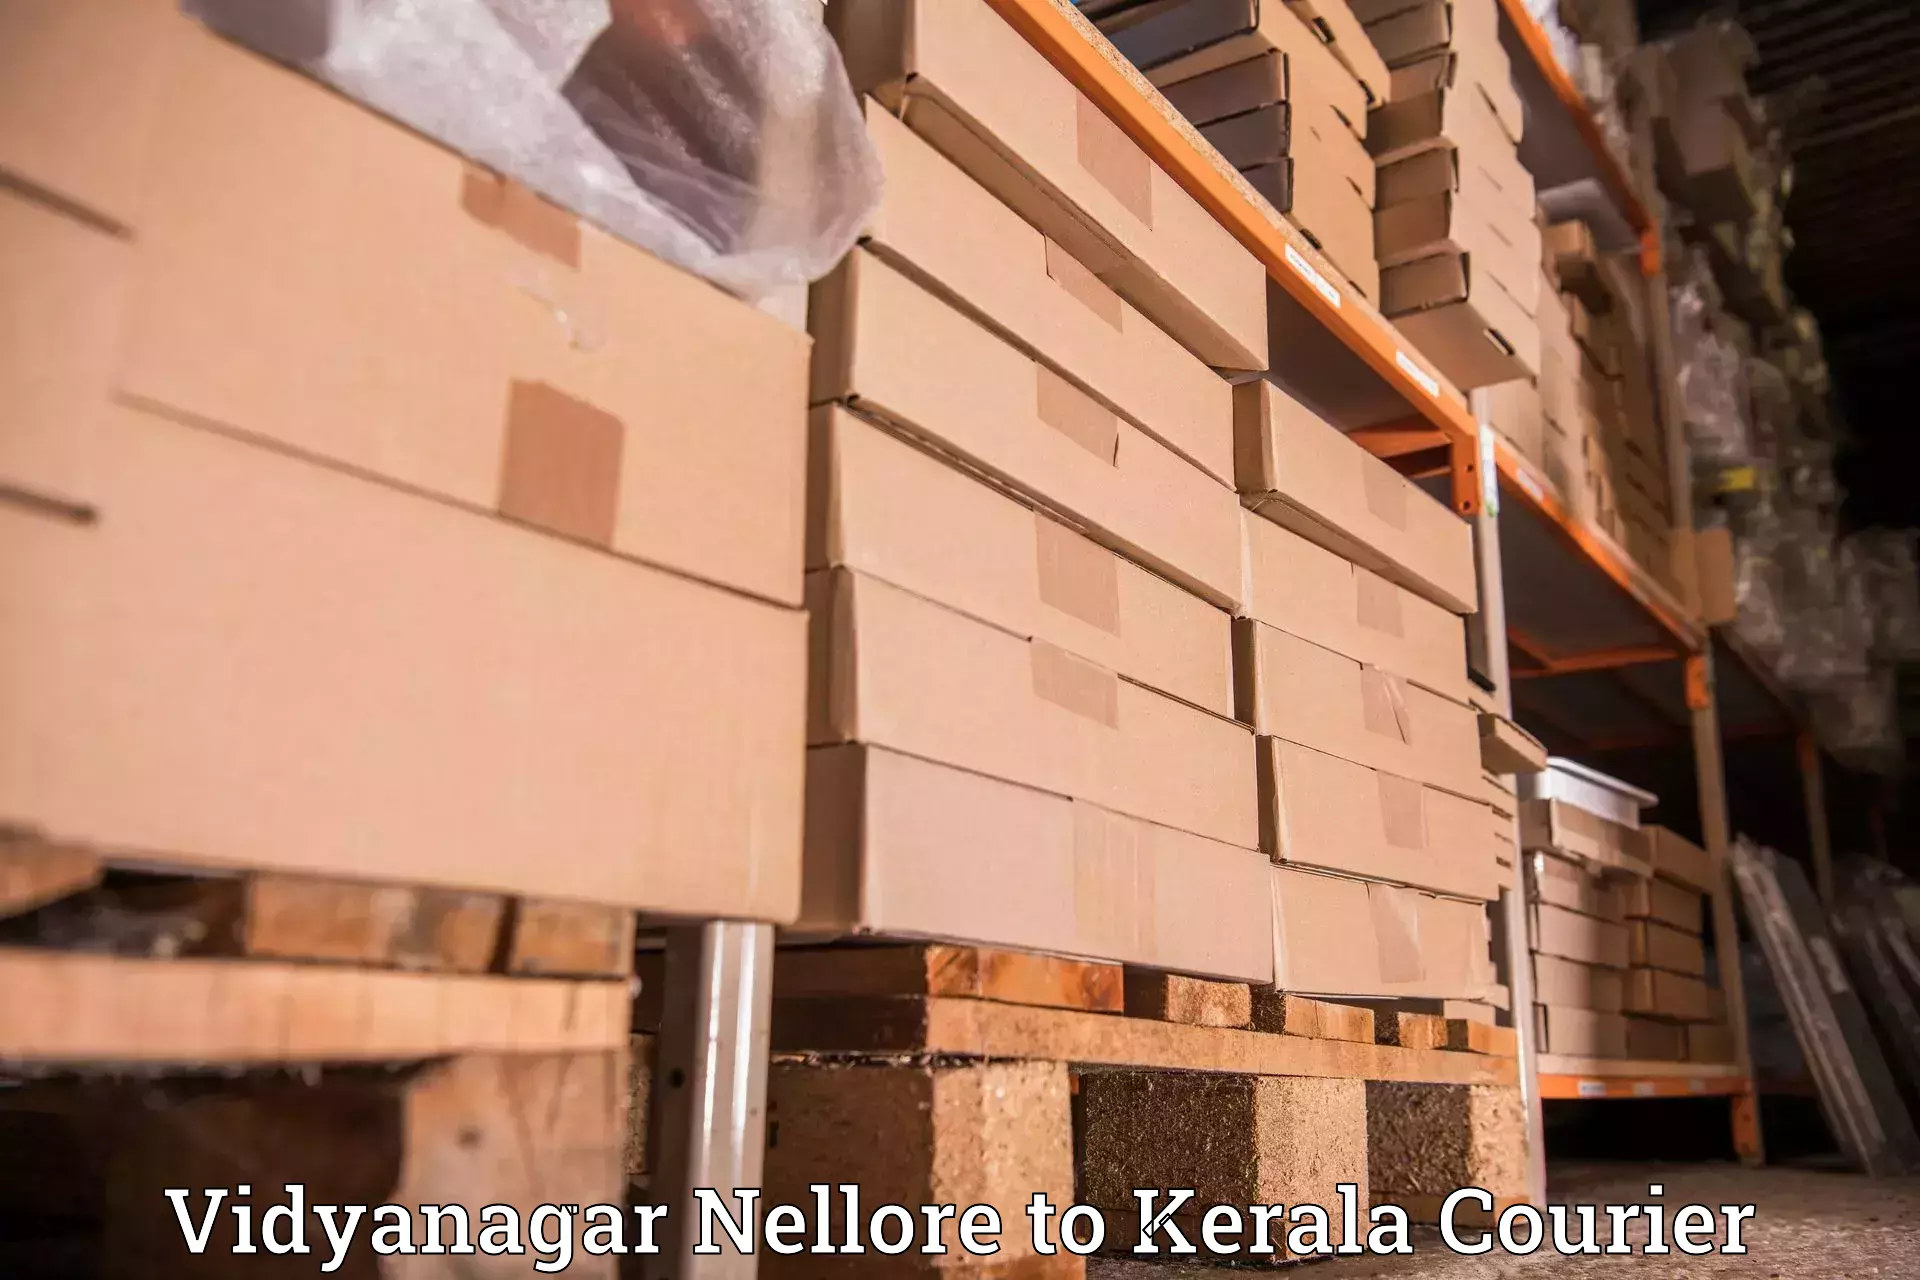 Cargo delivery service Vidyanagar Nellore to Kiliyanthara